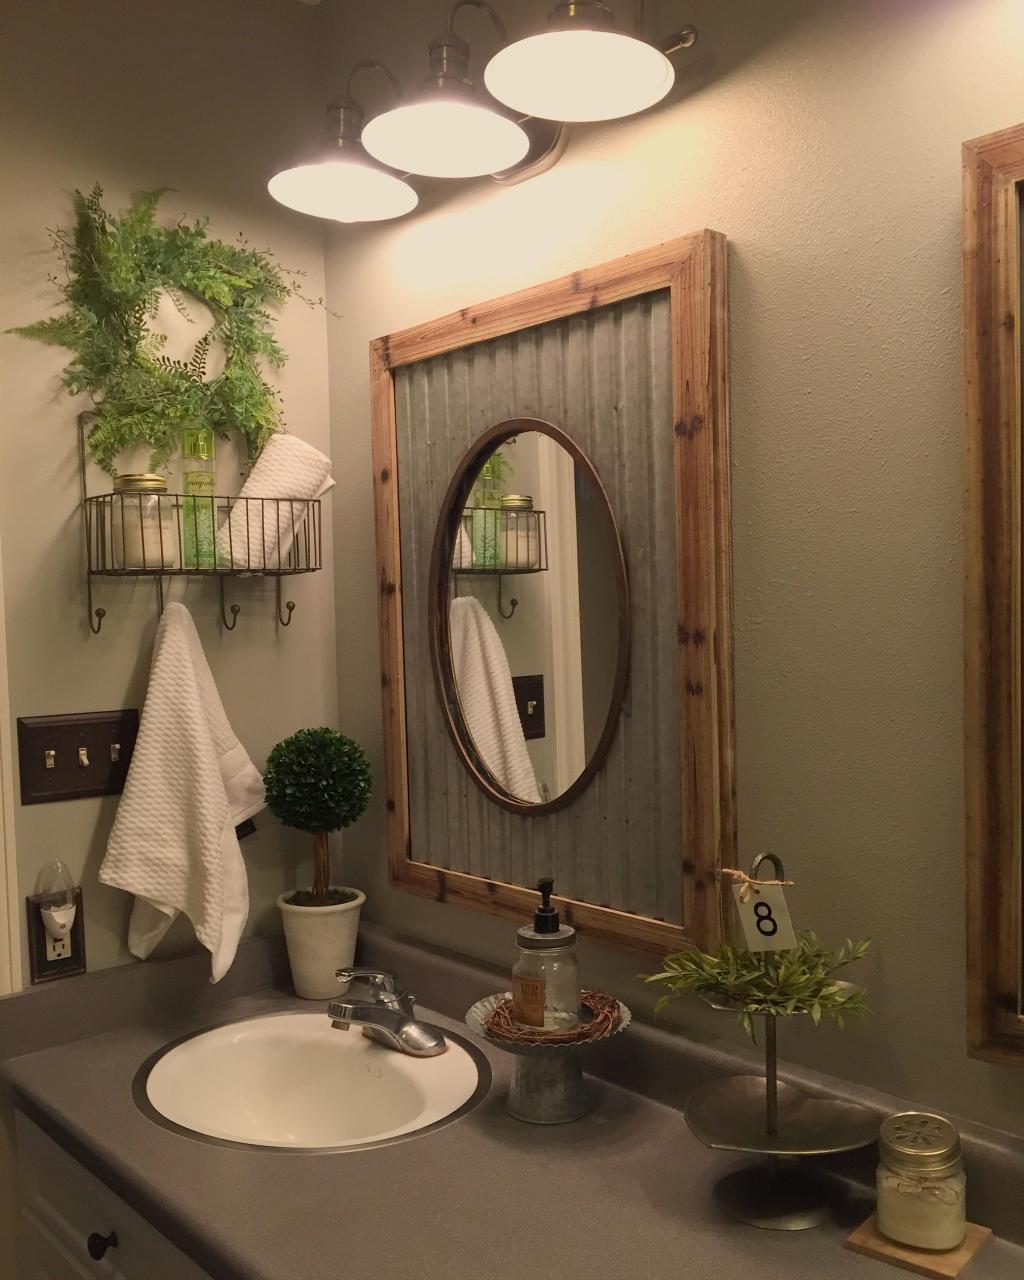 DIY mirror. Rustic bathroom mirrors, Rustic bathroom designs, Small